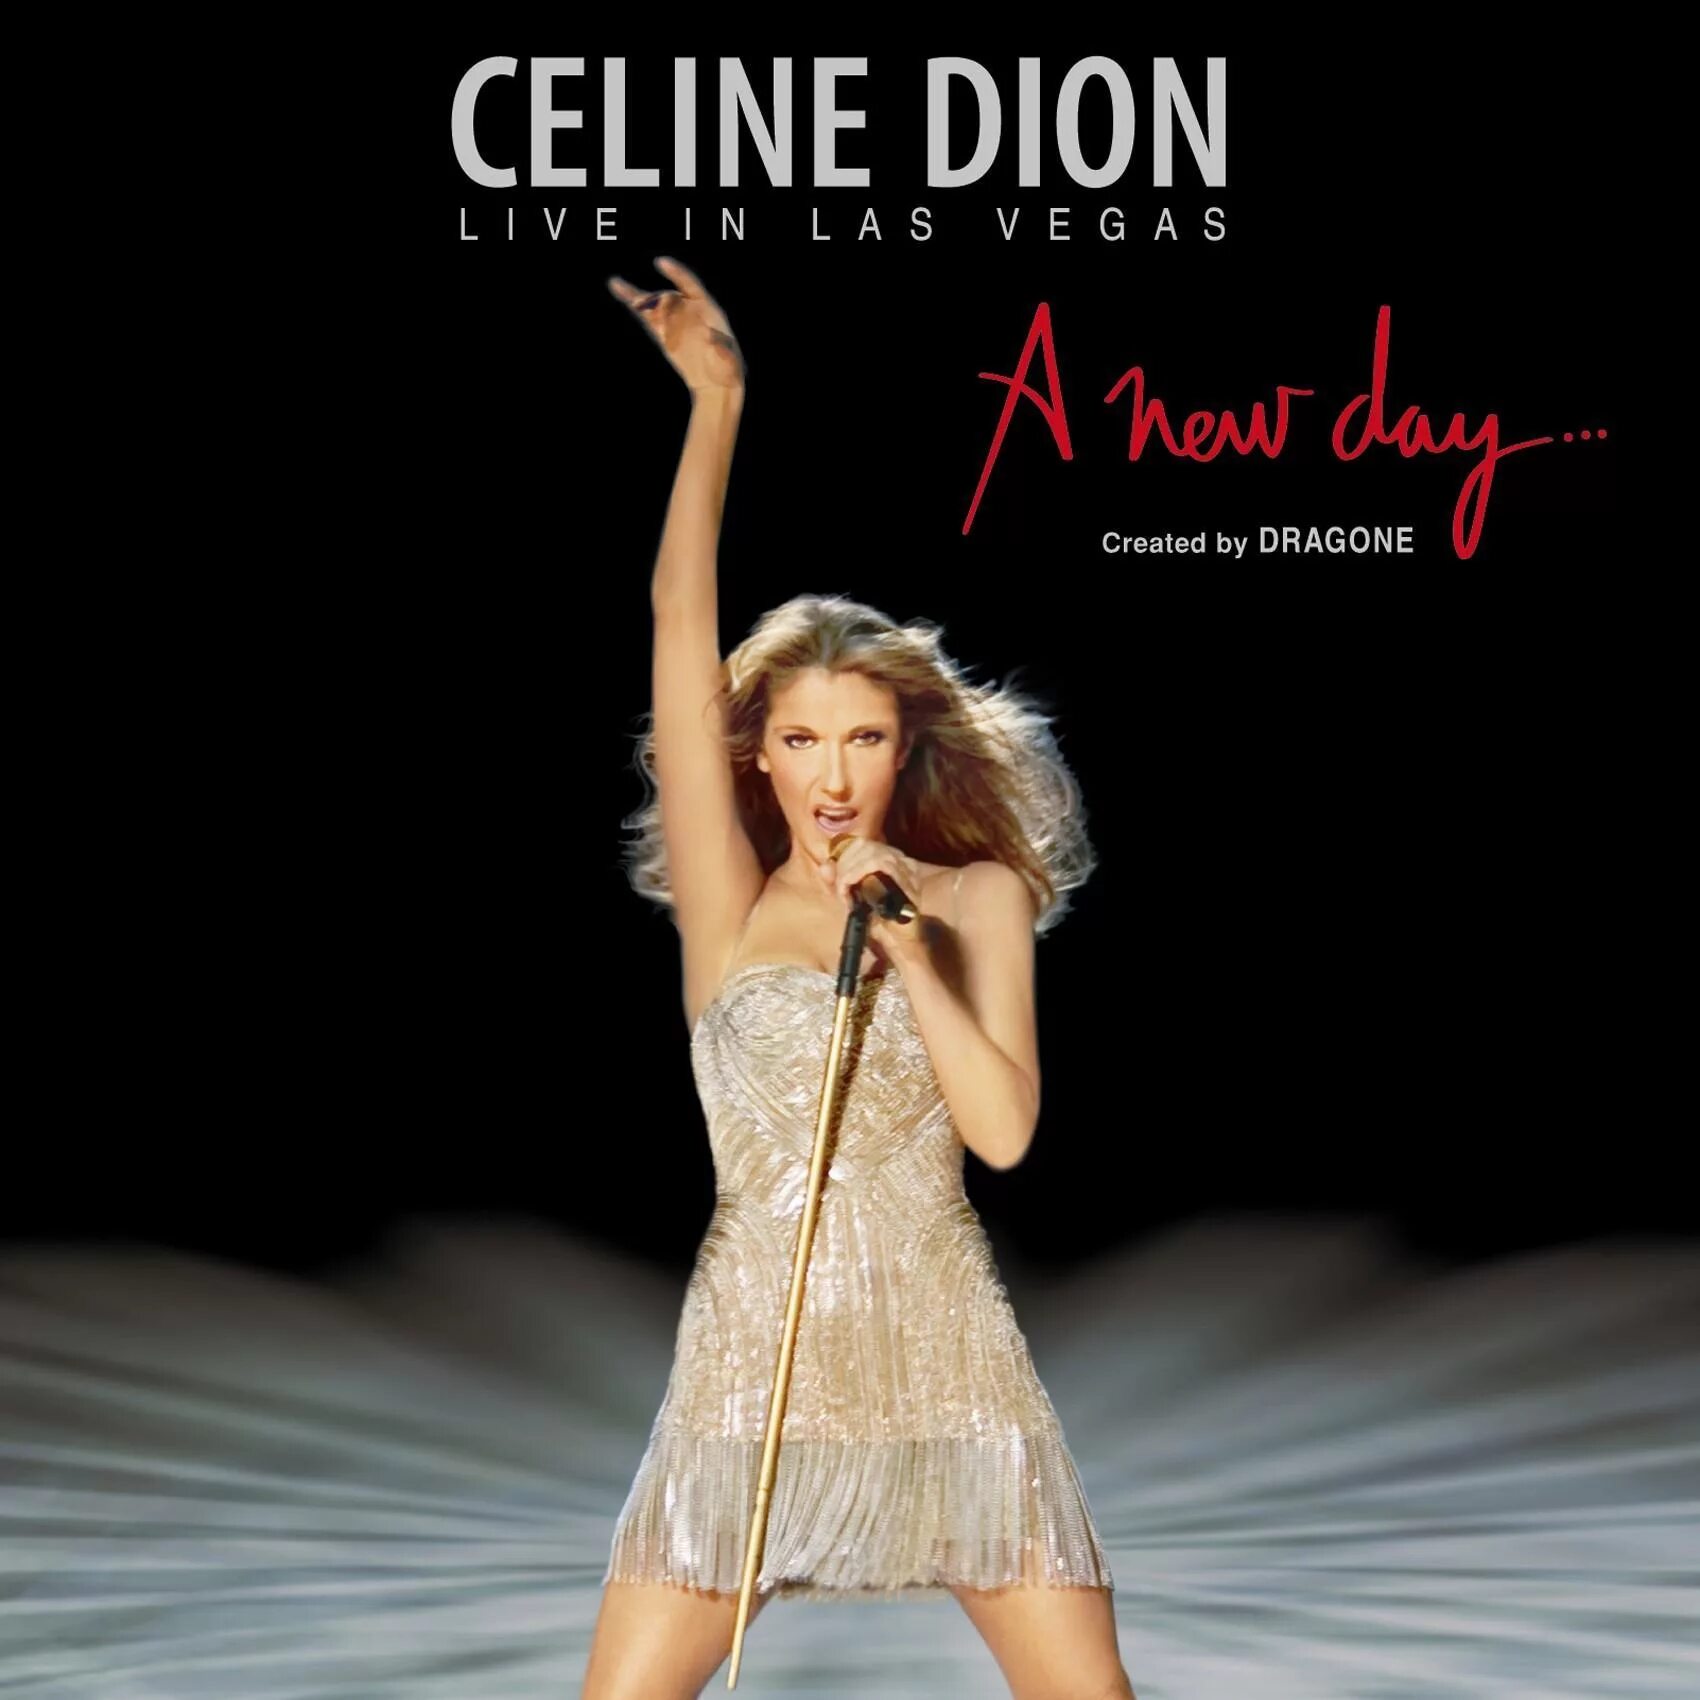 Celine dion a new day. A New Day has come Селин Дион. Селин Дион обложки альбомов. Celine Dion альбомы. Селин Дион Титаник.